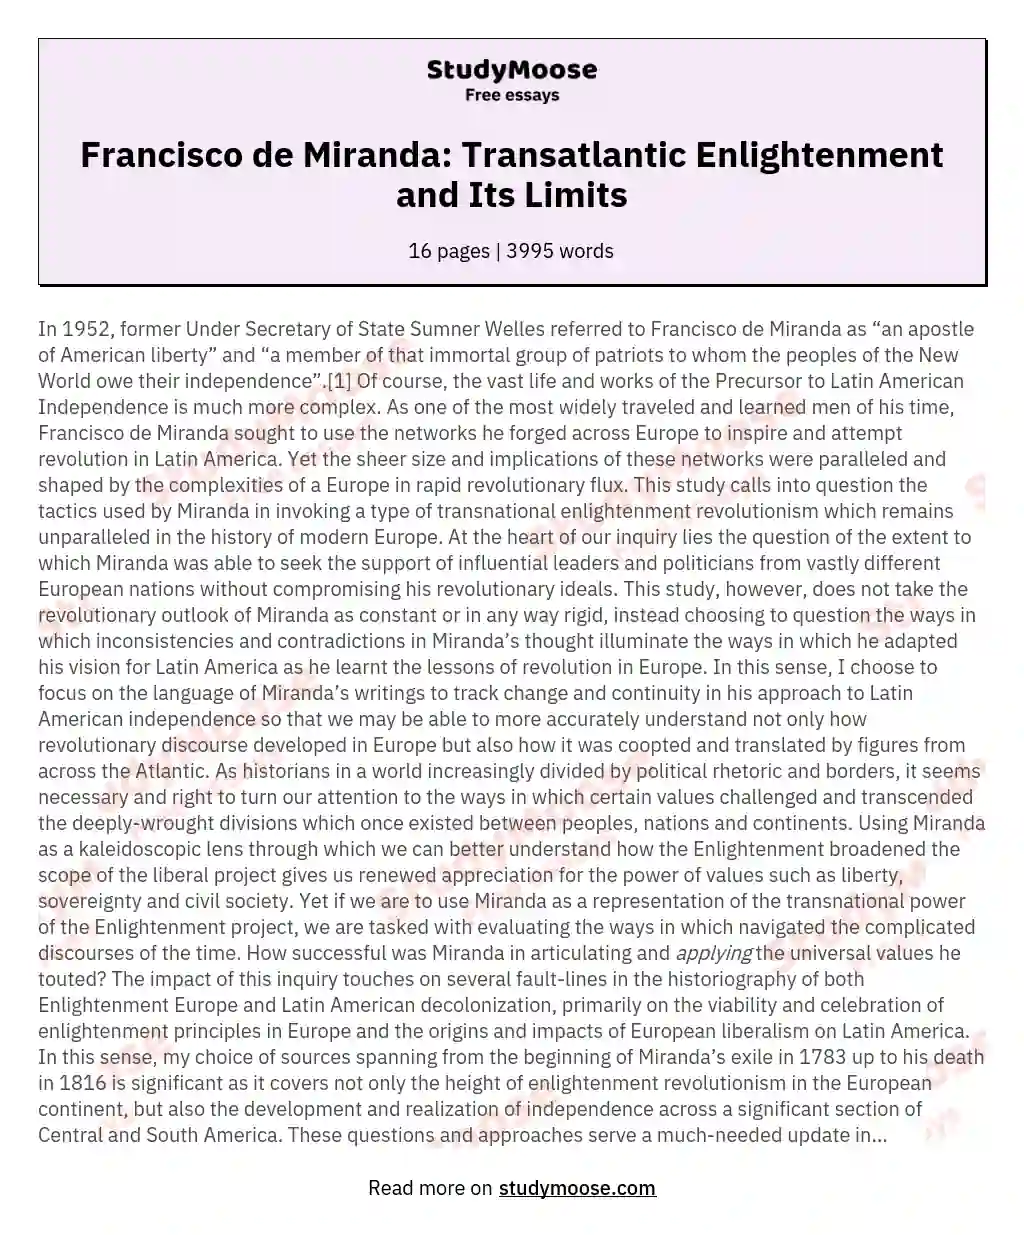 Francisco de Miranda: Transatlantic Enlightenment and Its Limits